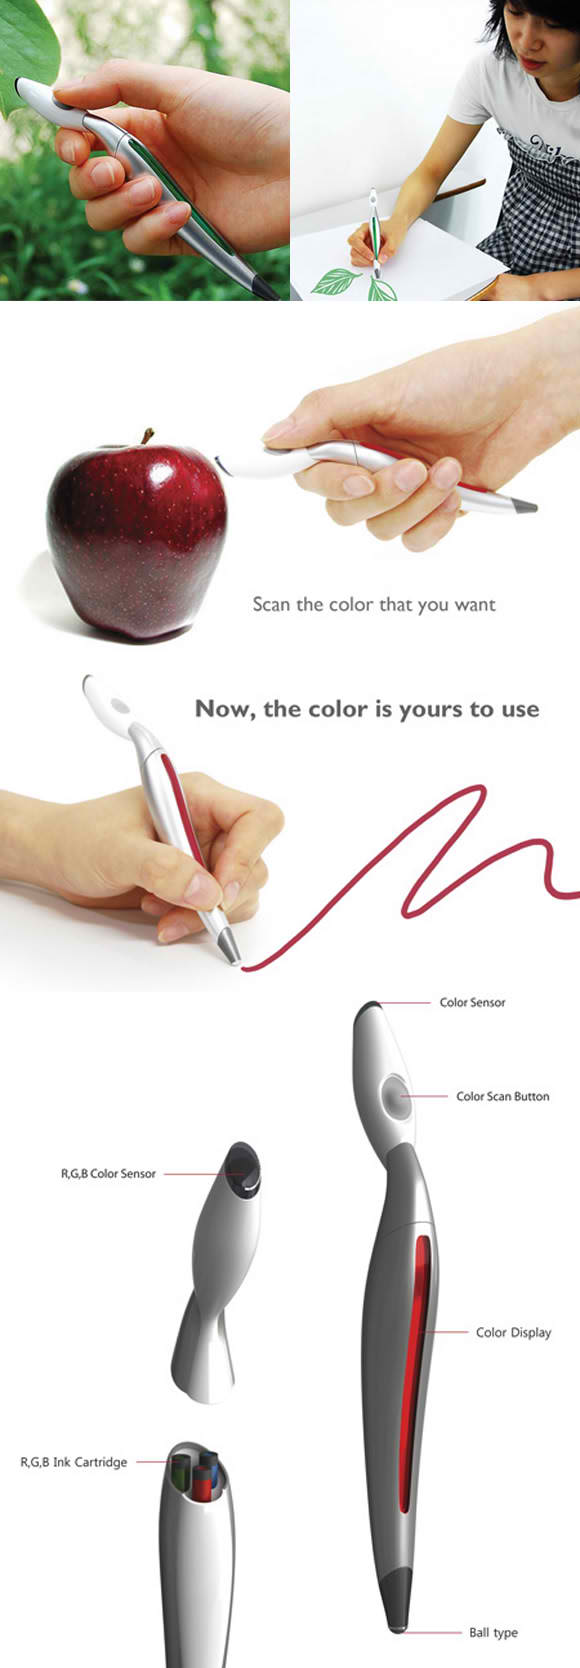 Magic color pen